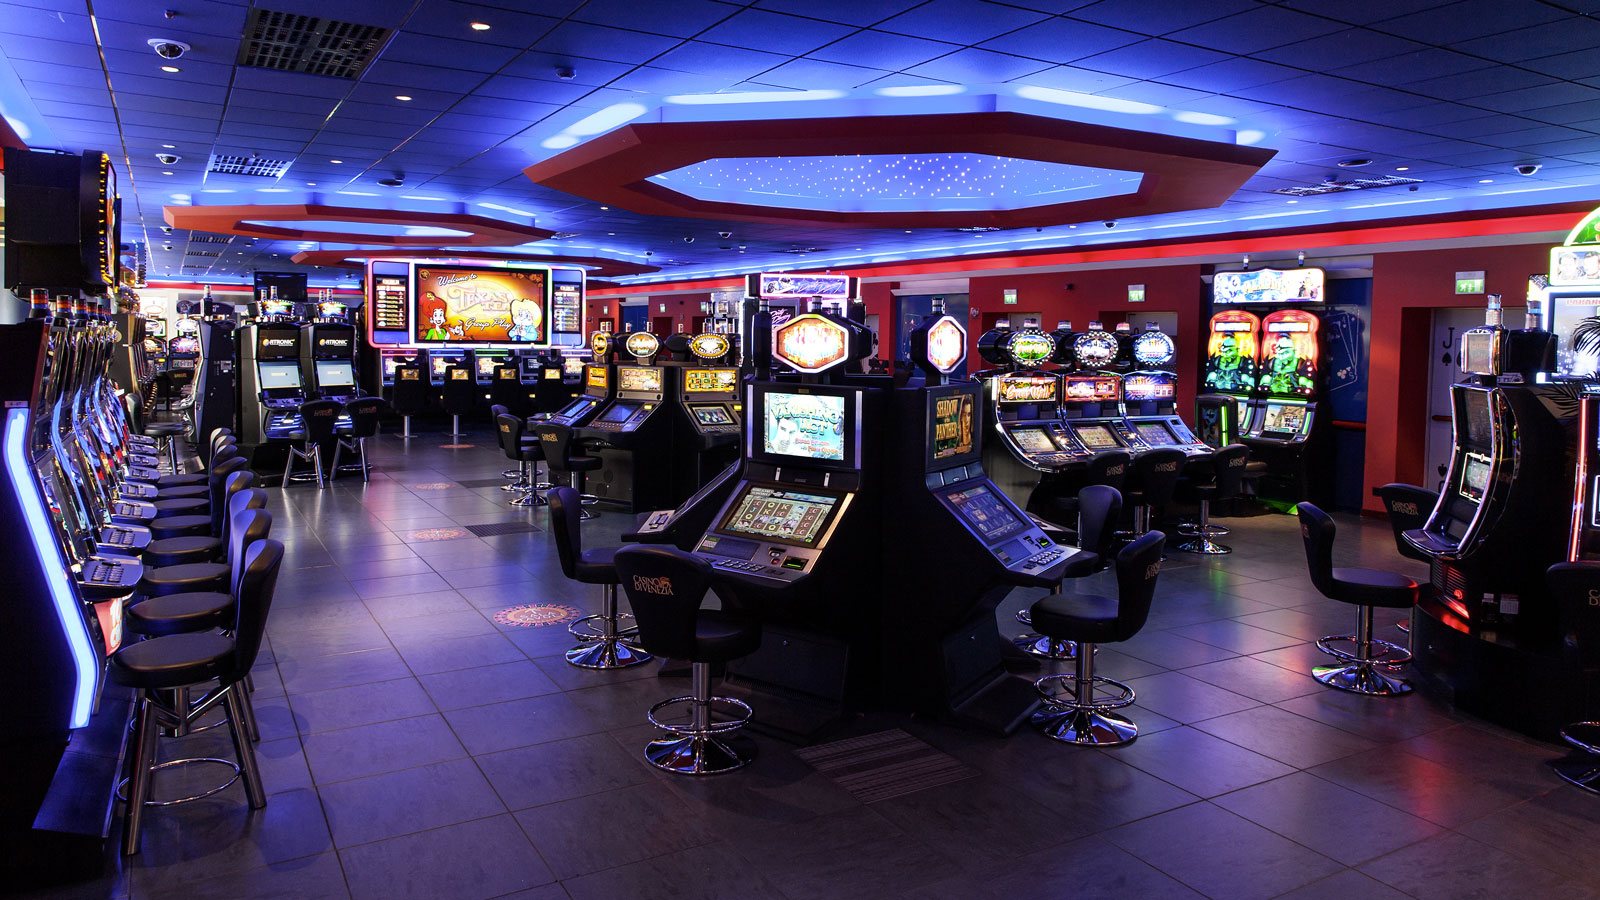 Casino ретро new retro casino. Зал игровых автоматов Торнадо. Игровые залы казино. Игровой зал автоматы казино. Игровой зал с игровыми автоматами.